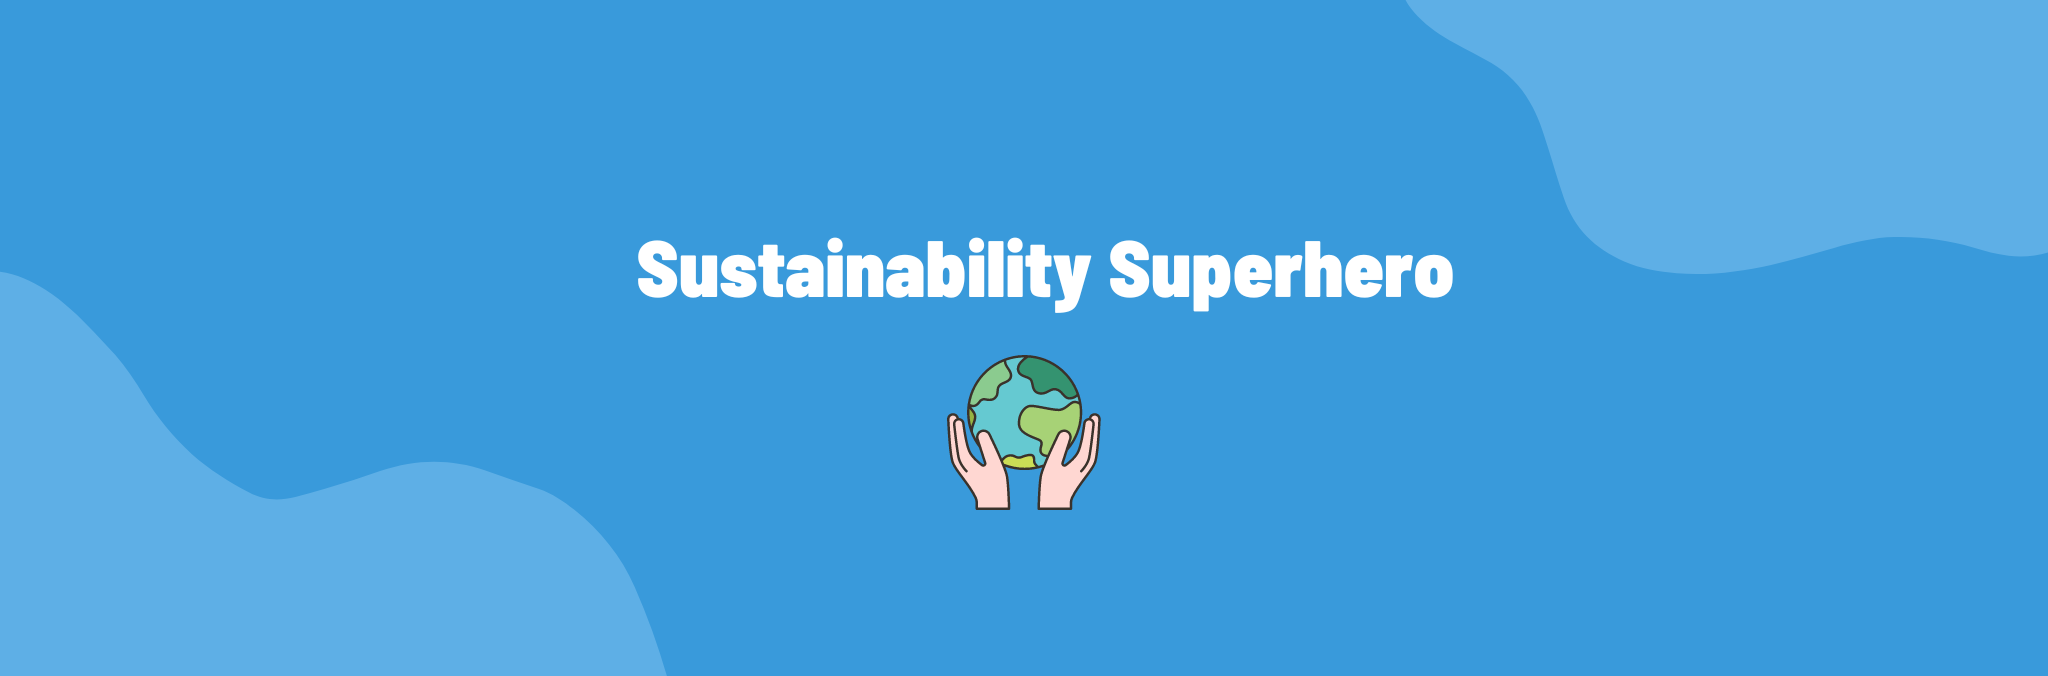 Sustainability Superhero: jannik luyten